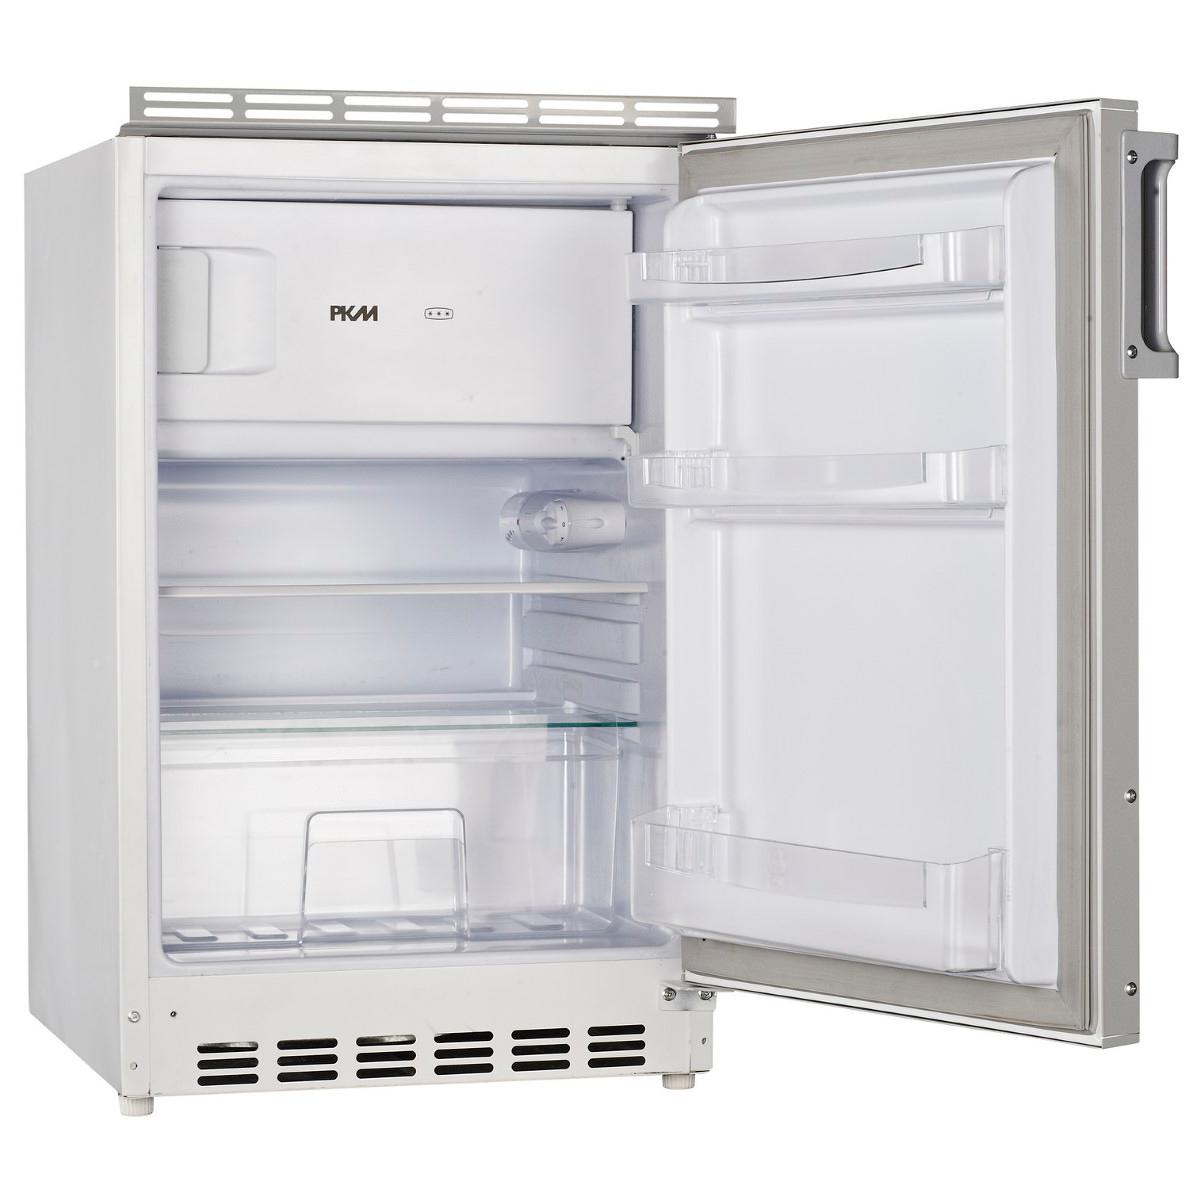 B-Ware Kühlschrank mit Gefrierfach (88L) E (4-Sterne-Gefrierfach -18°C)  50cm